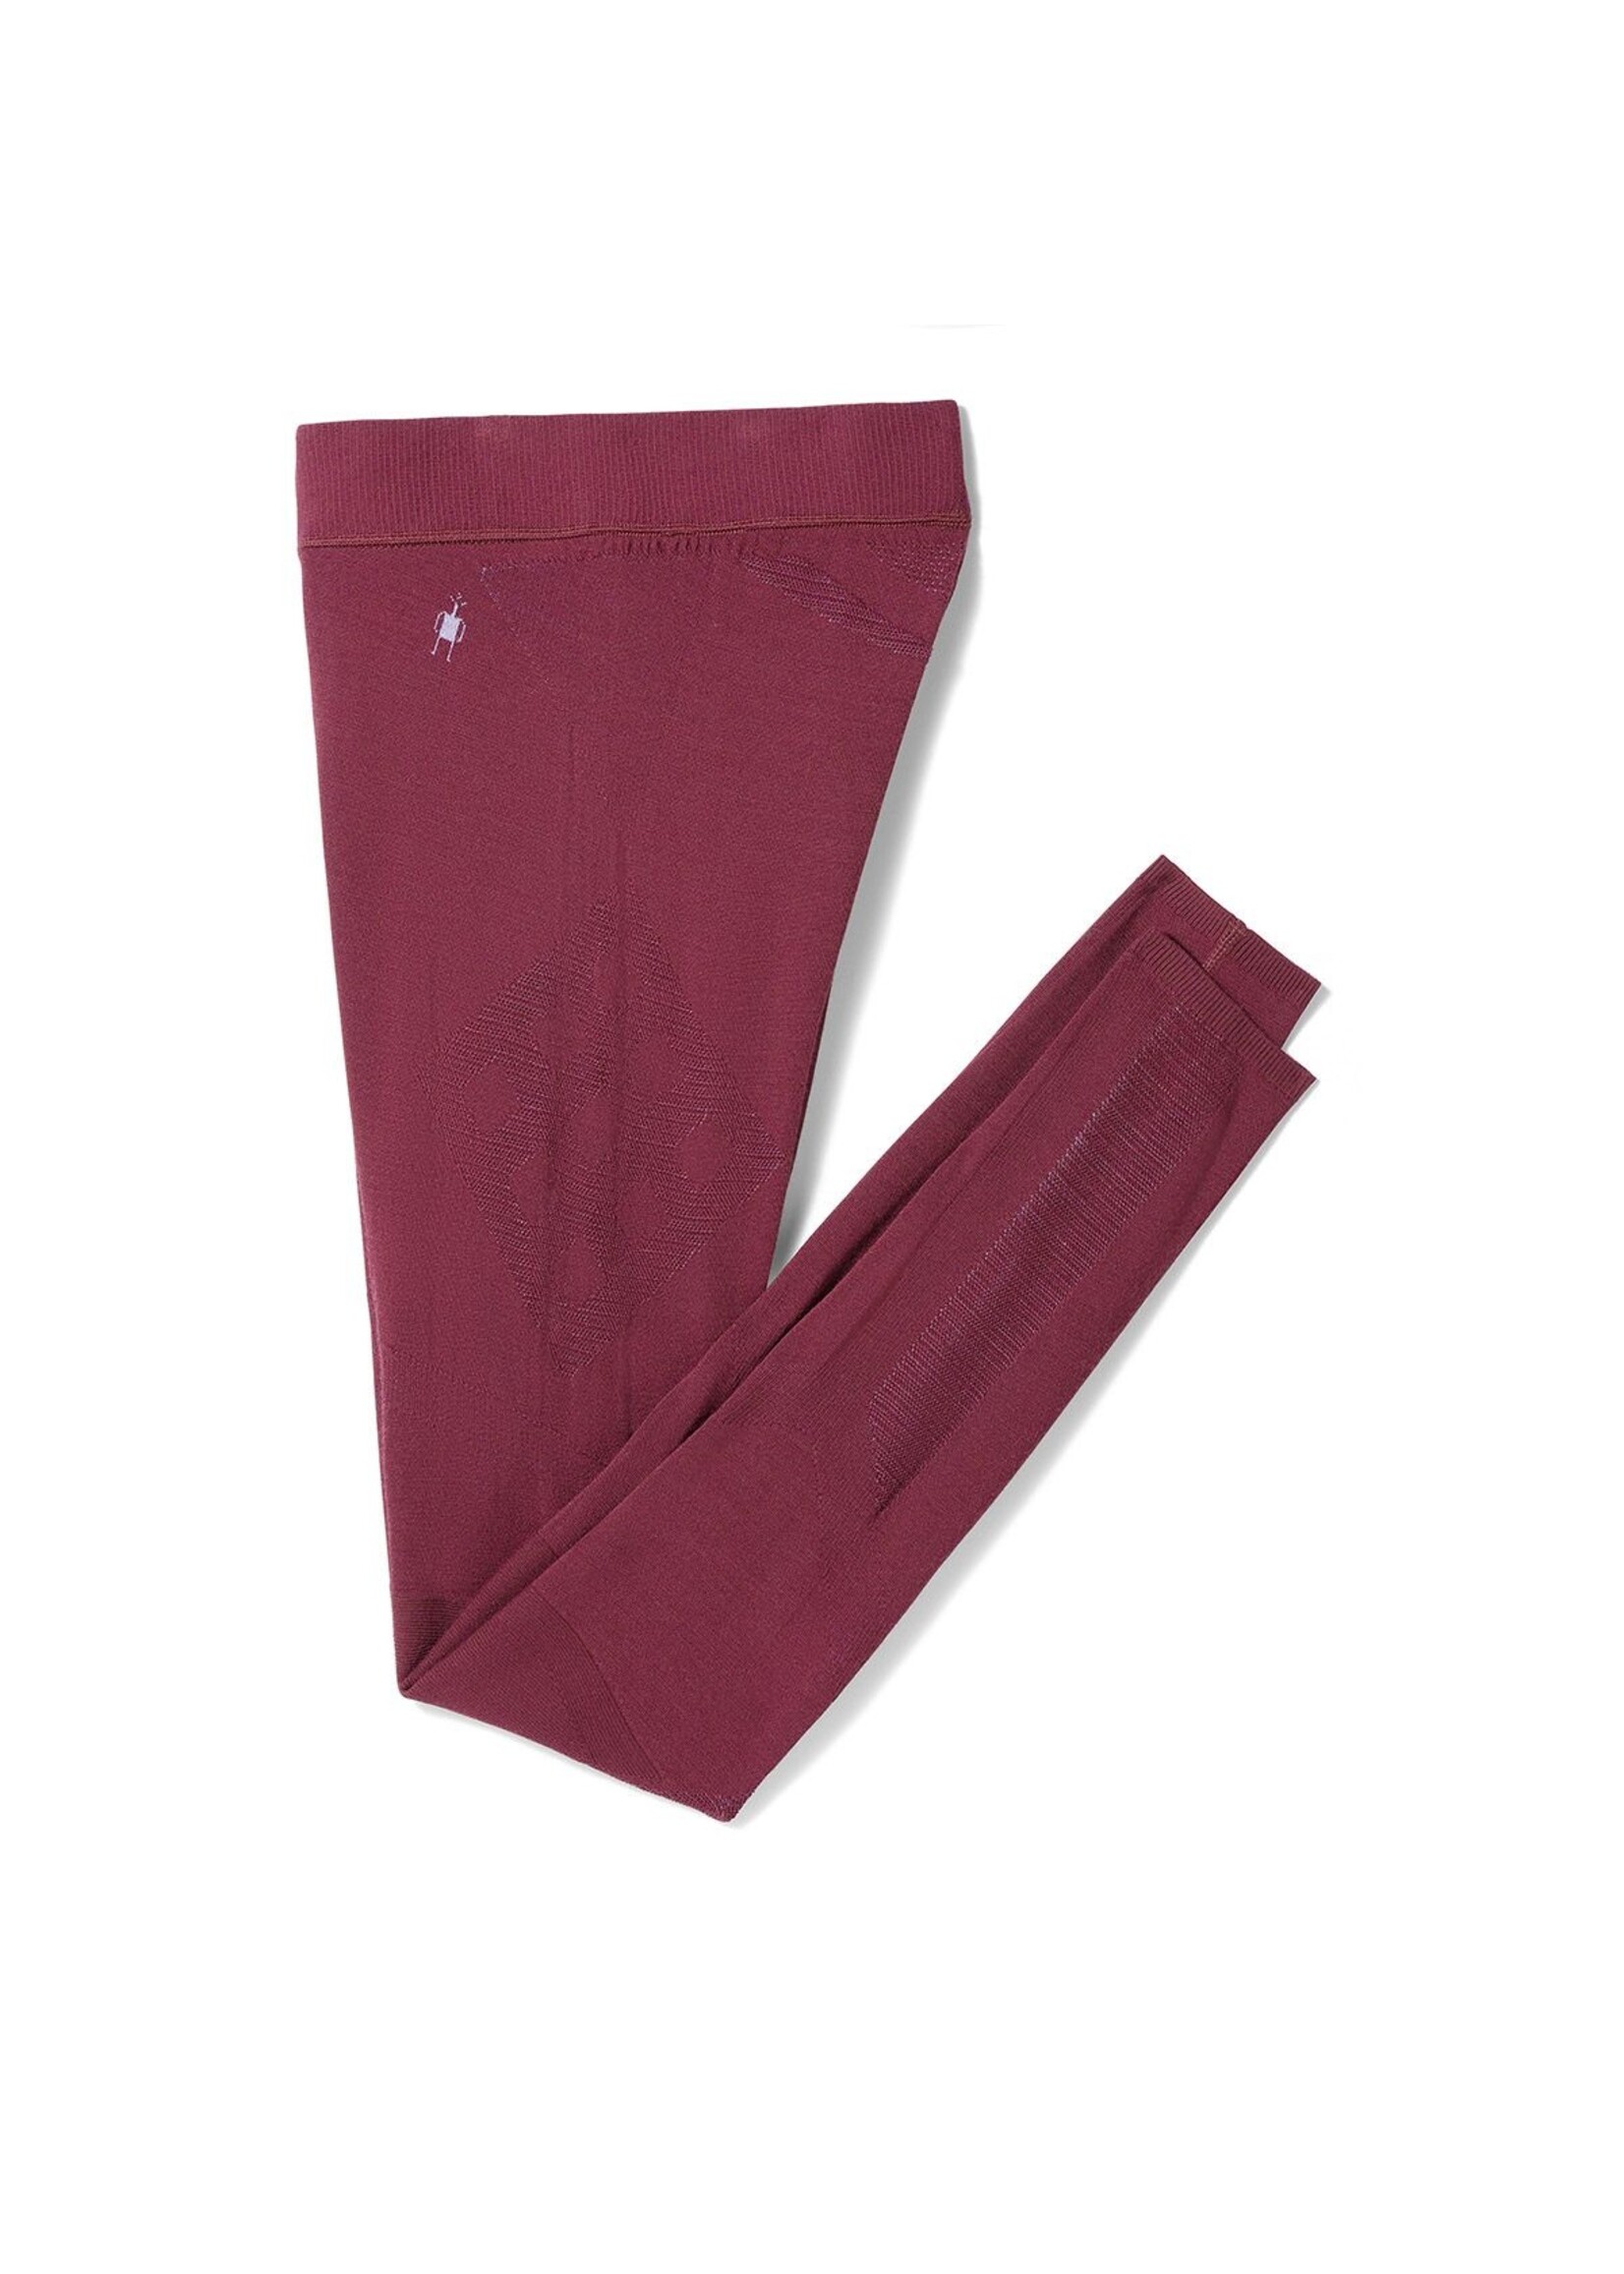 SMARTWOOL Pantalon couche de base Intraknit Thermal en mérinos Cerise noire/Violet-Femme